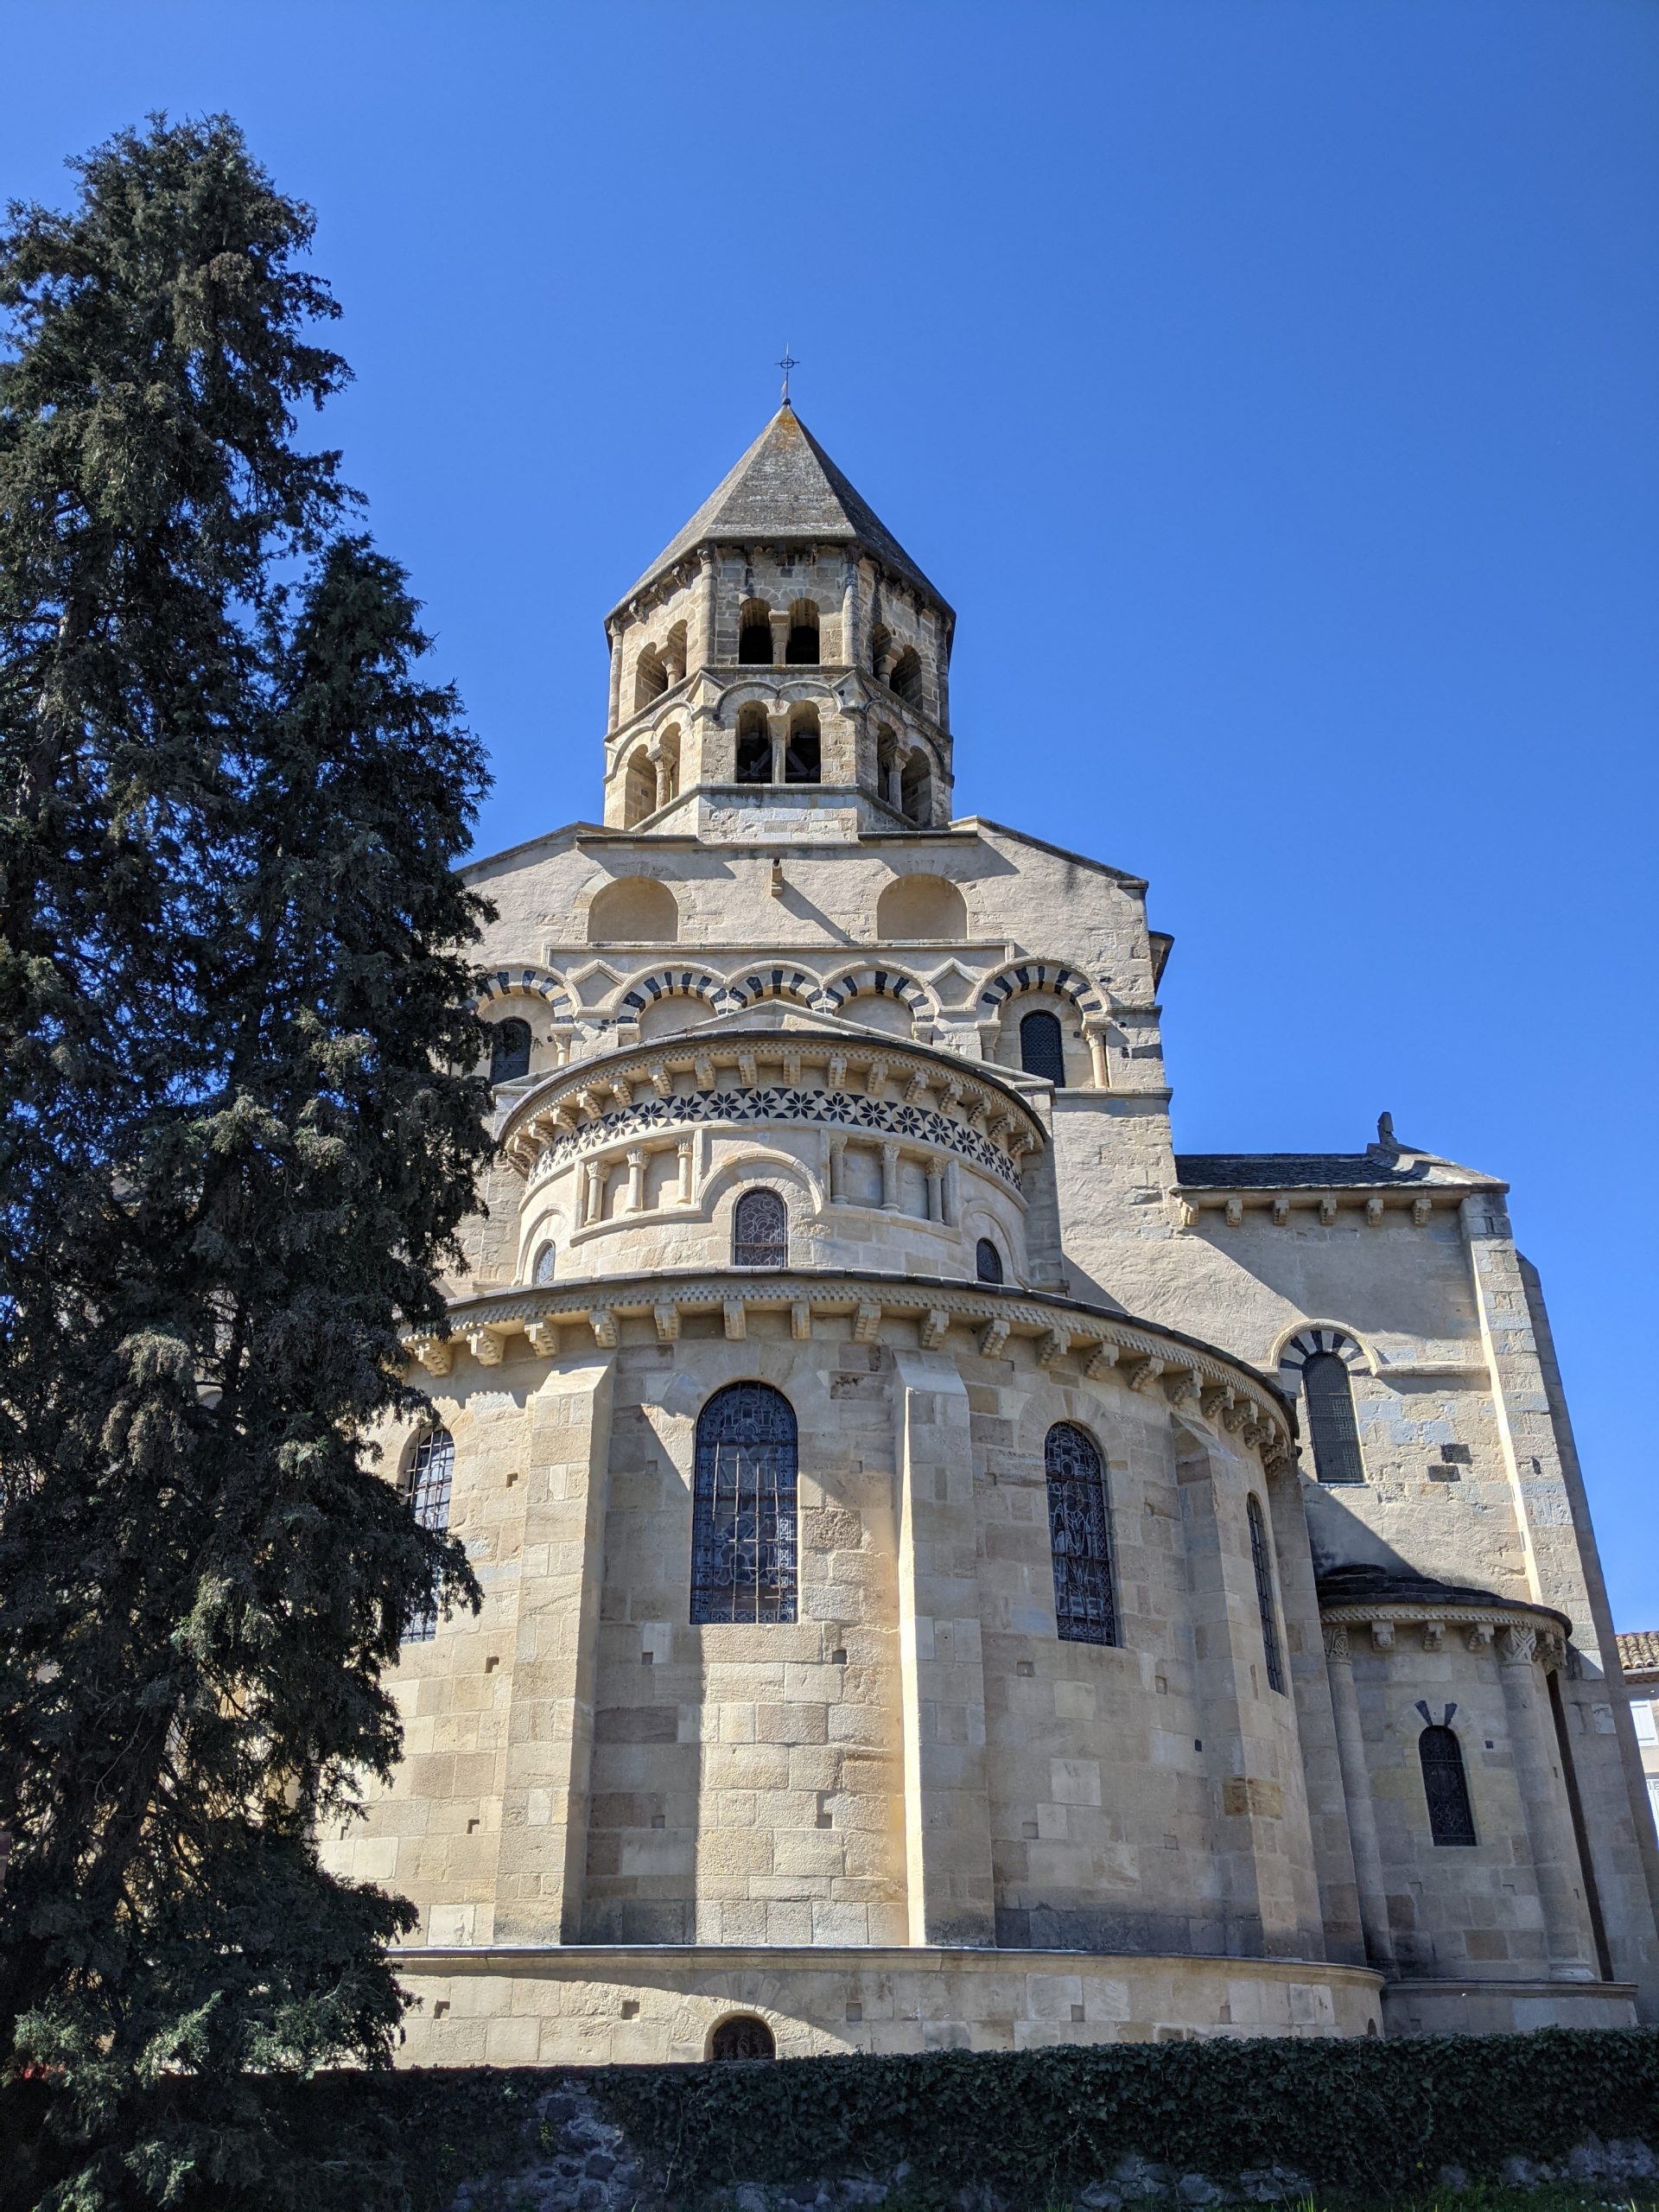 Église Notre-Dame de Saint-Saturnin 
Auvergne
MyFrenchLife.org
